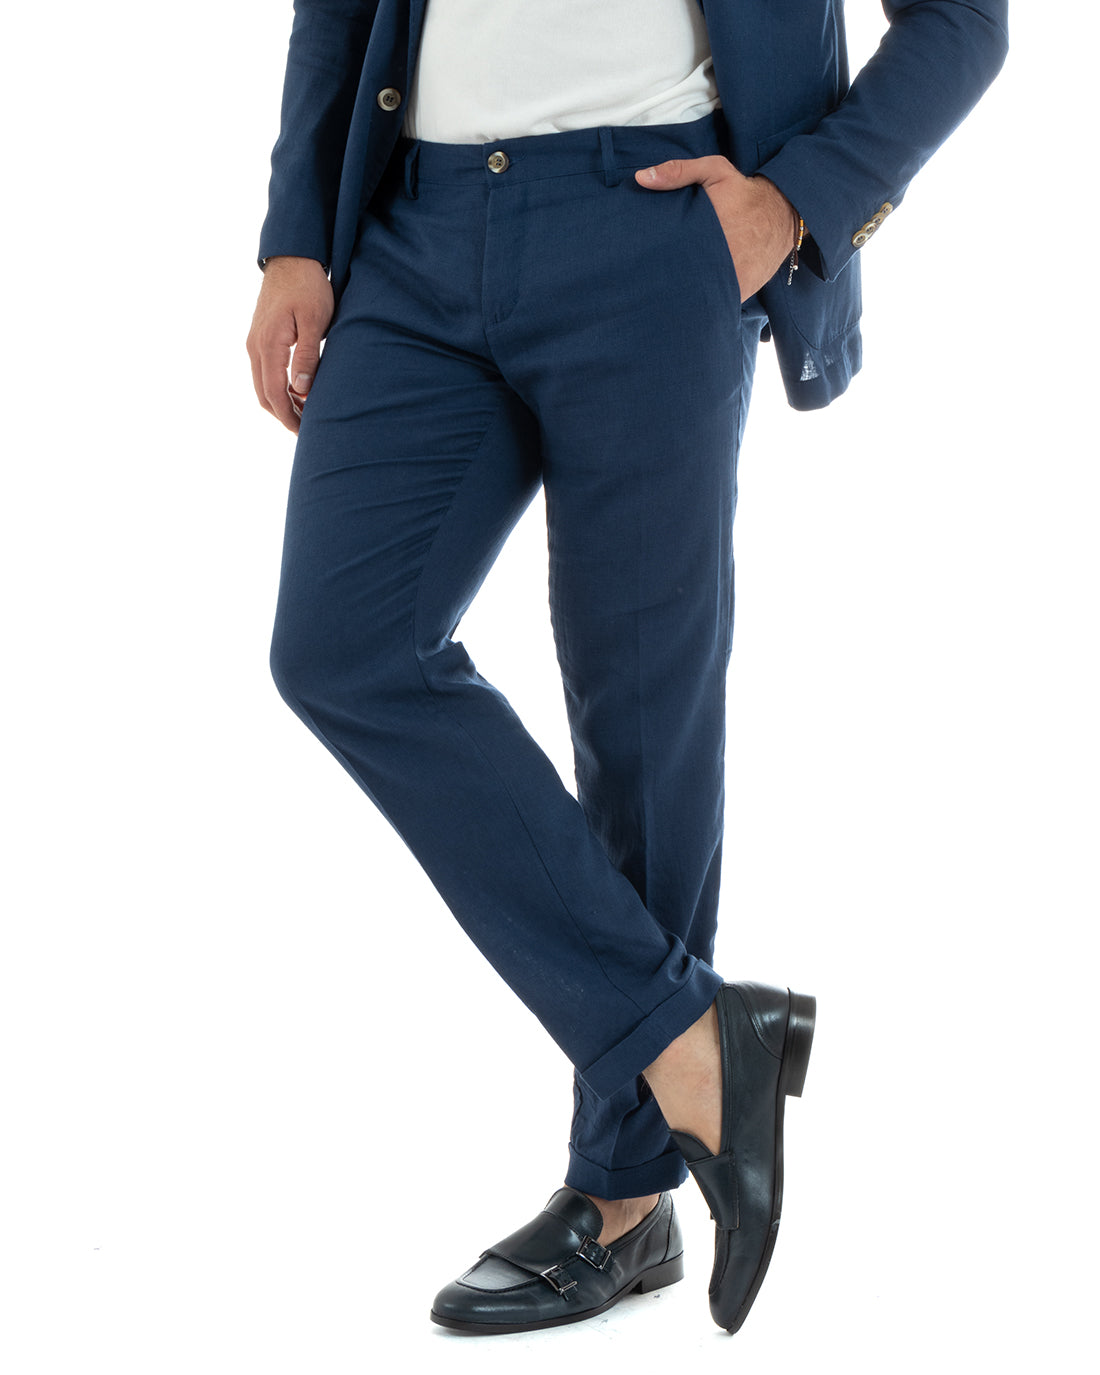 Abito Uomo Monopetto Vestito Lino Completo Giacca Pantaloni Blu Sportivo Elegante Cerimonia GIOSAL-OU2300A